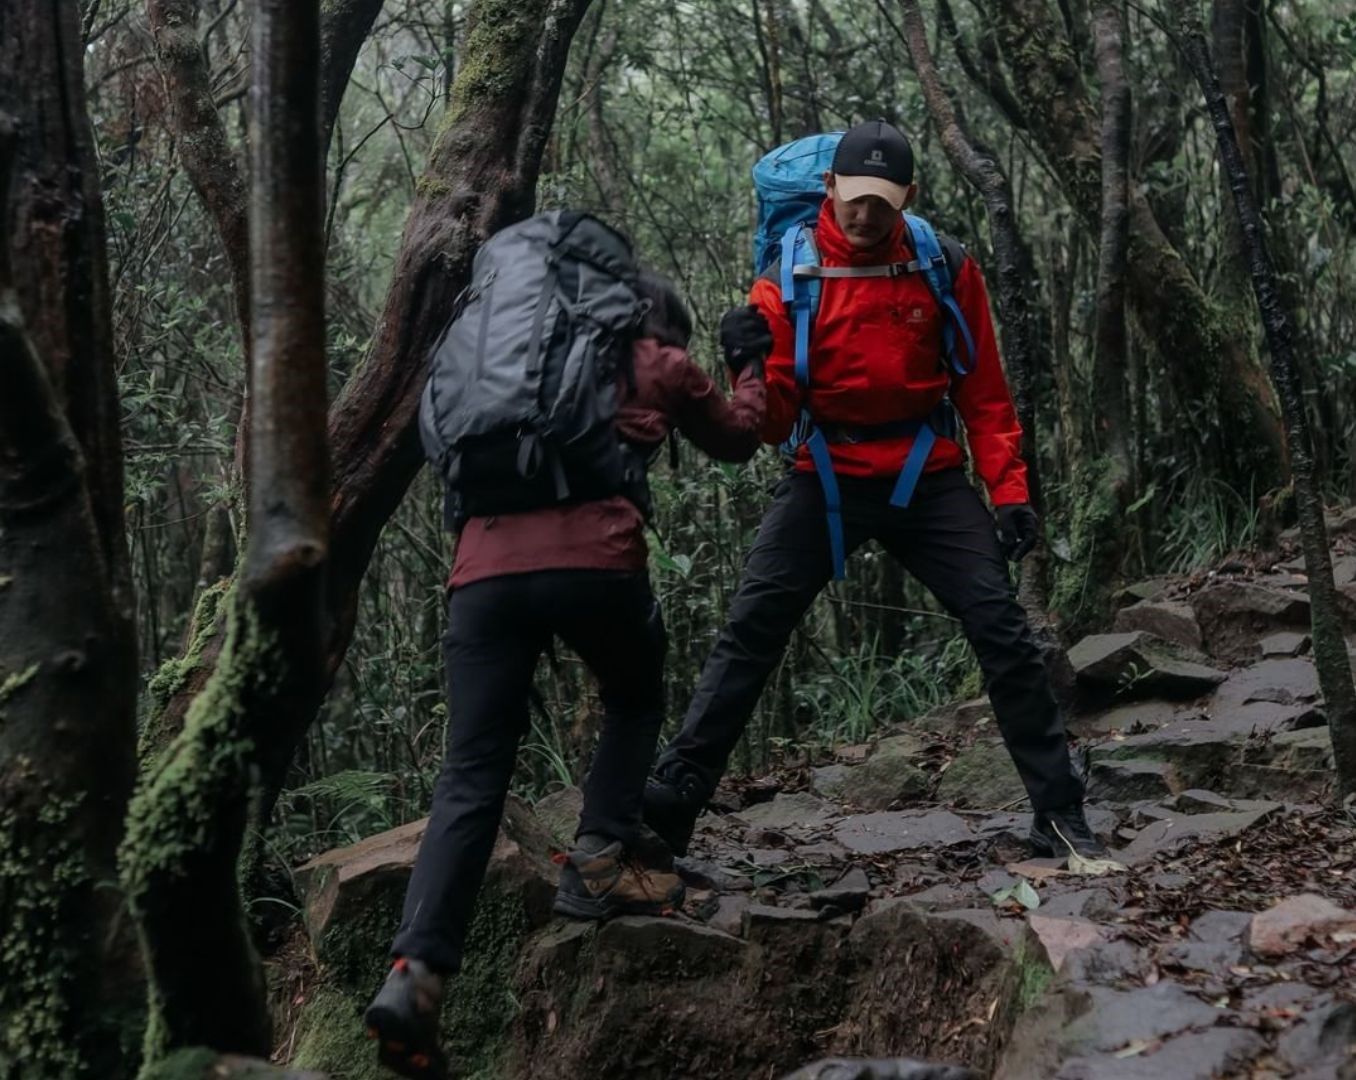 Keuntungan mendaki bersama adalah adanya rekan yang membantu saat kesulitan./ Instagram/ Consina Official